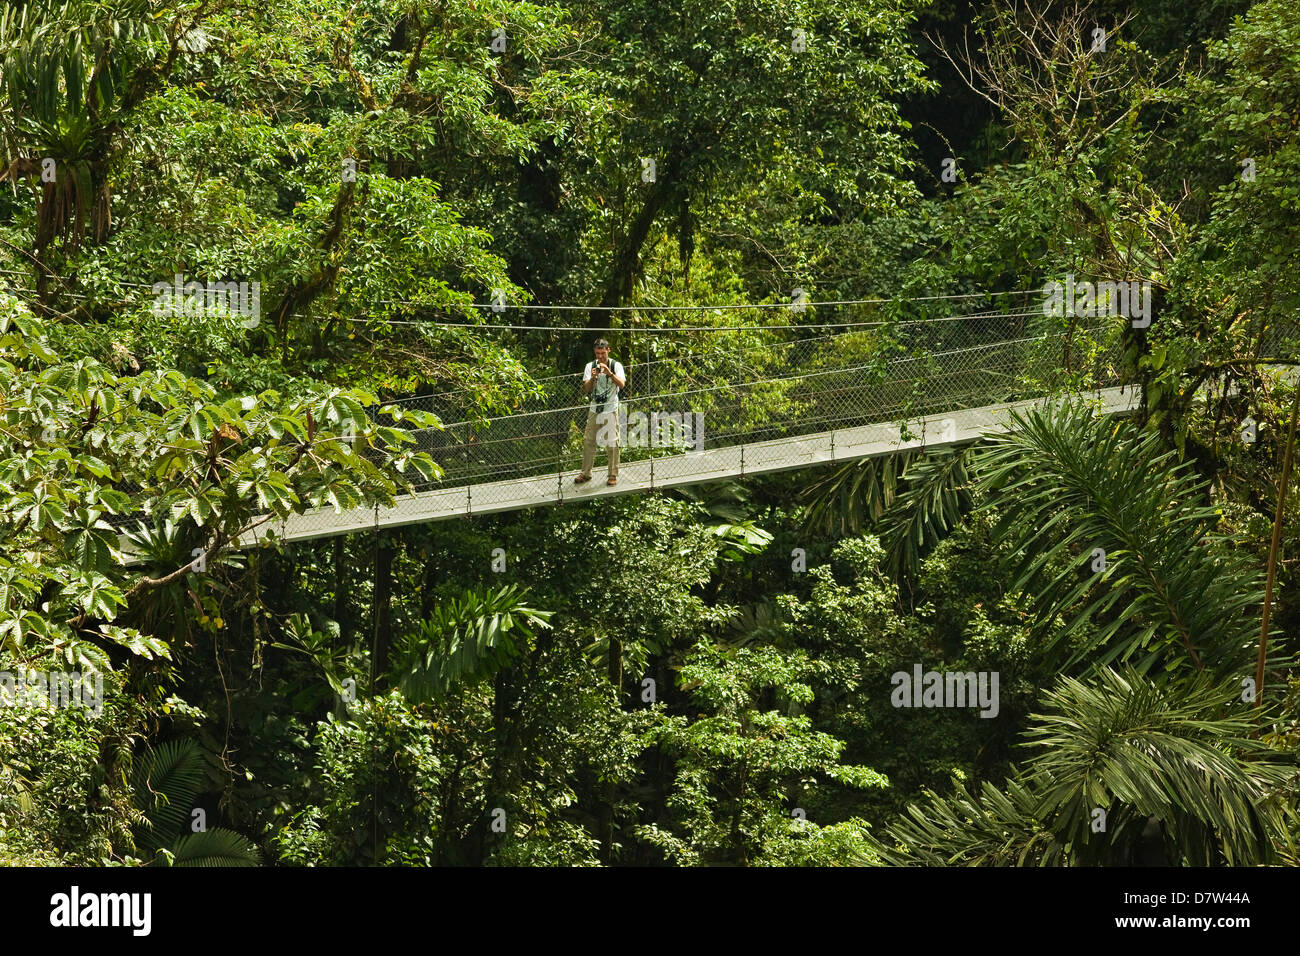 Visiteur à ponts suspendus d'Arenal où de forêt vierge est accessible par des passerelles, la Fortuna, Province d'Alajuela, Costa Rica Banque D'Images